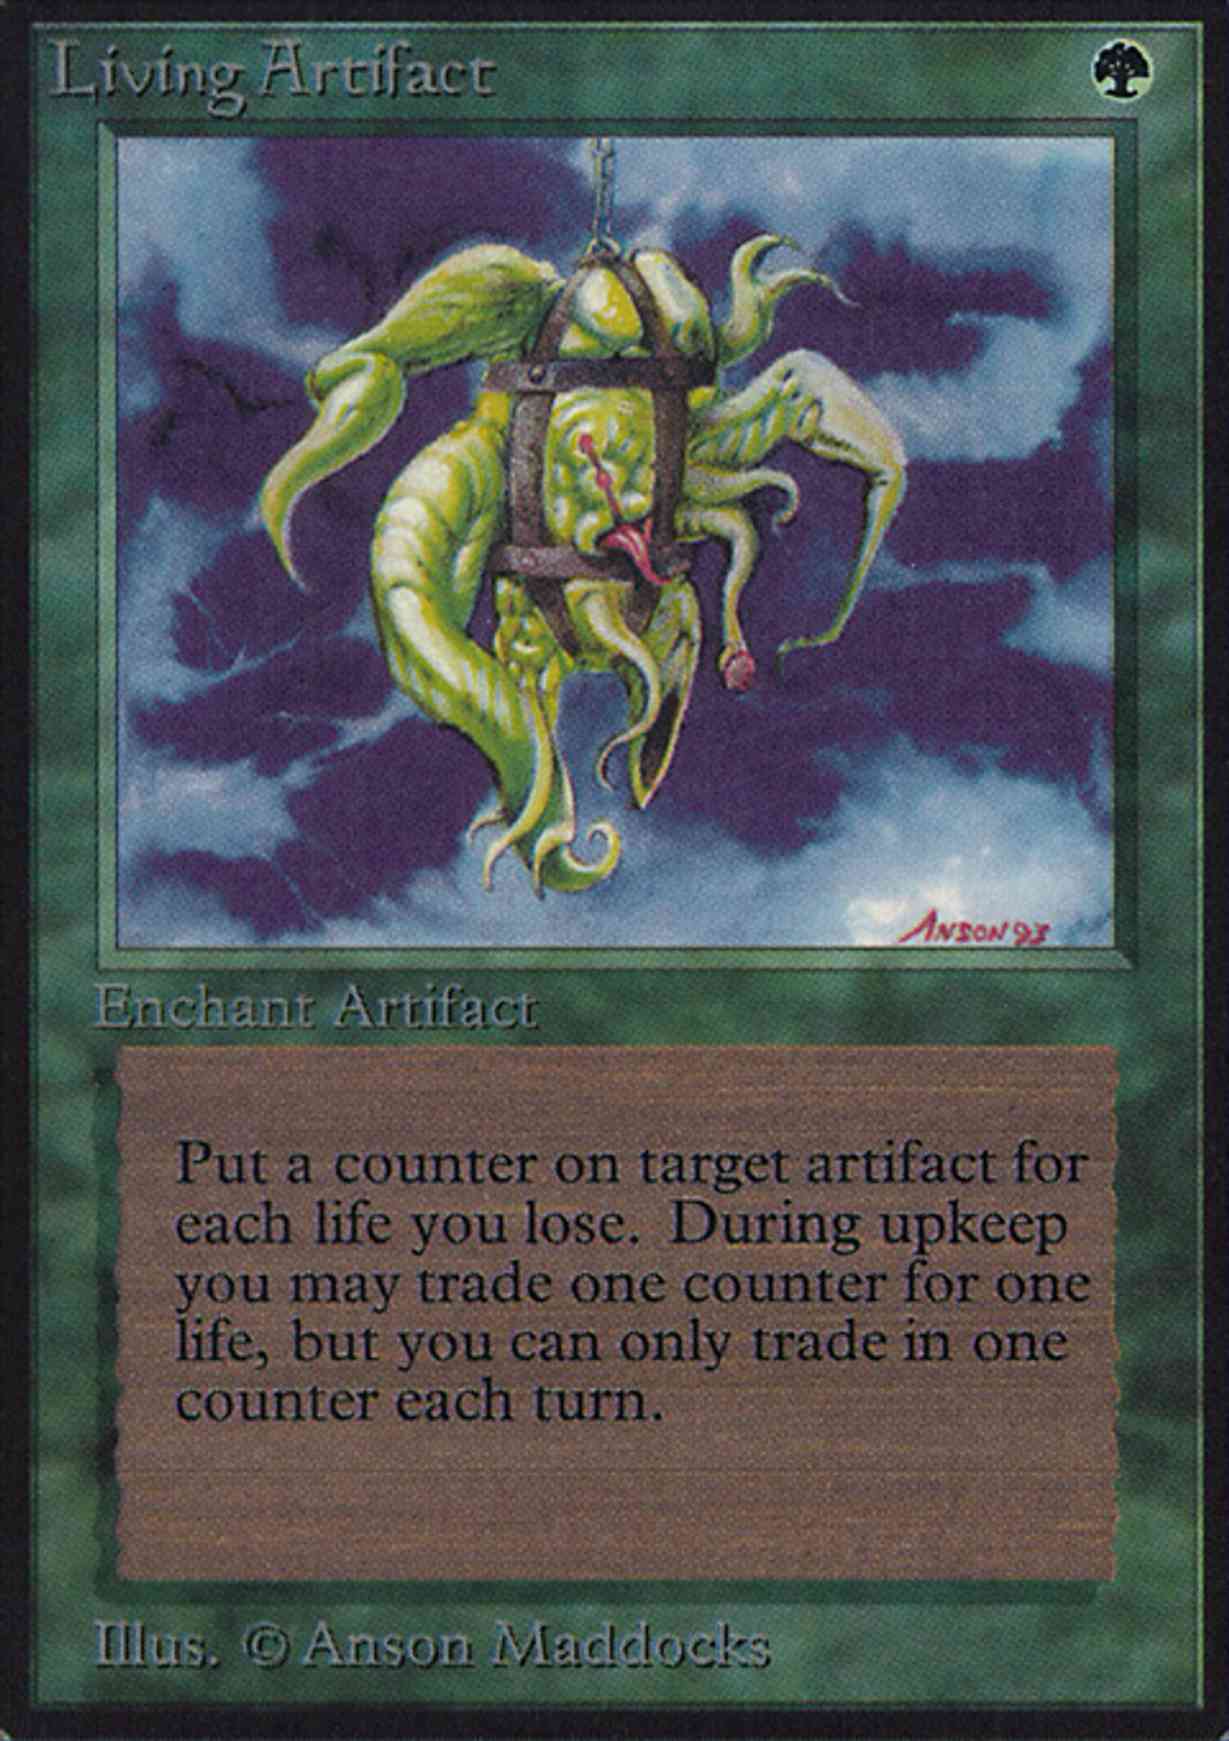 Living Artifact magic card front